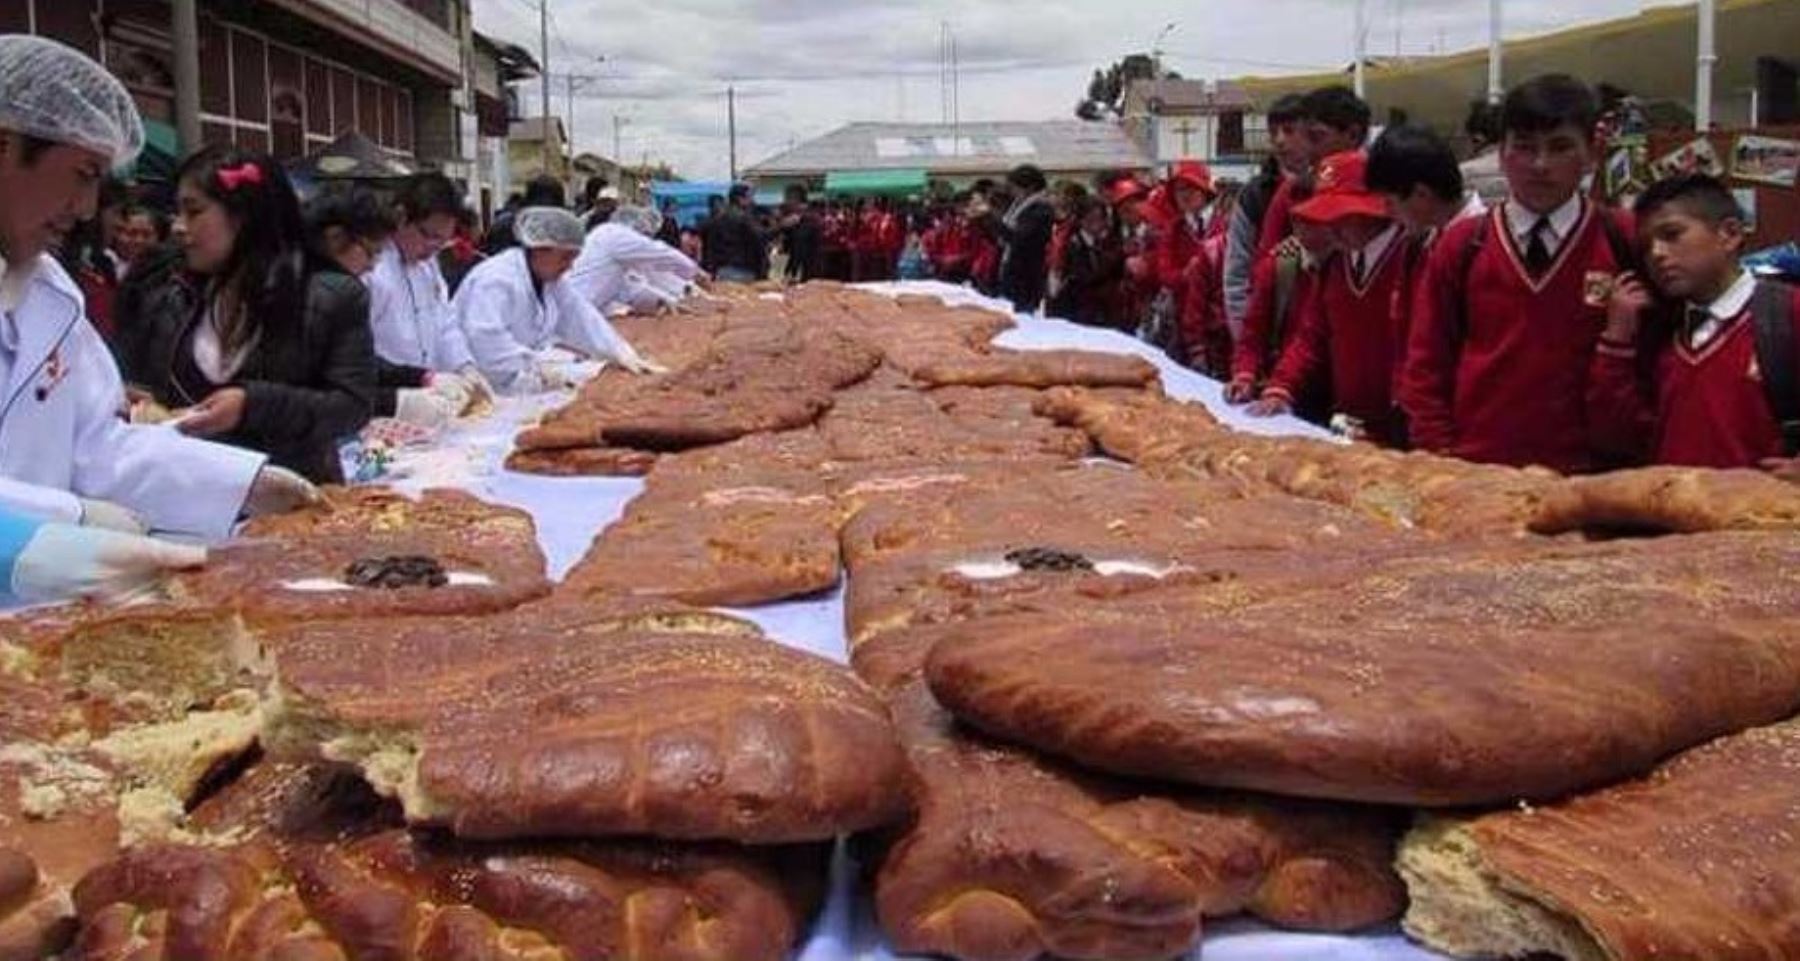 Al conmemorarse el Día de los Difuntos, personal de la municipalidad provincial de Junín preparó la Tanta Wawa más grande del Perú, tradicional pan andino en forma de muñeco, preparado con harina de trigo, de maca y otros ingredientes oriundos de la zona, a la cual se bautizó con el nombre de “Shimona”.